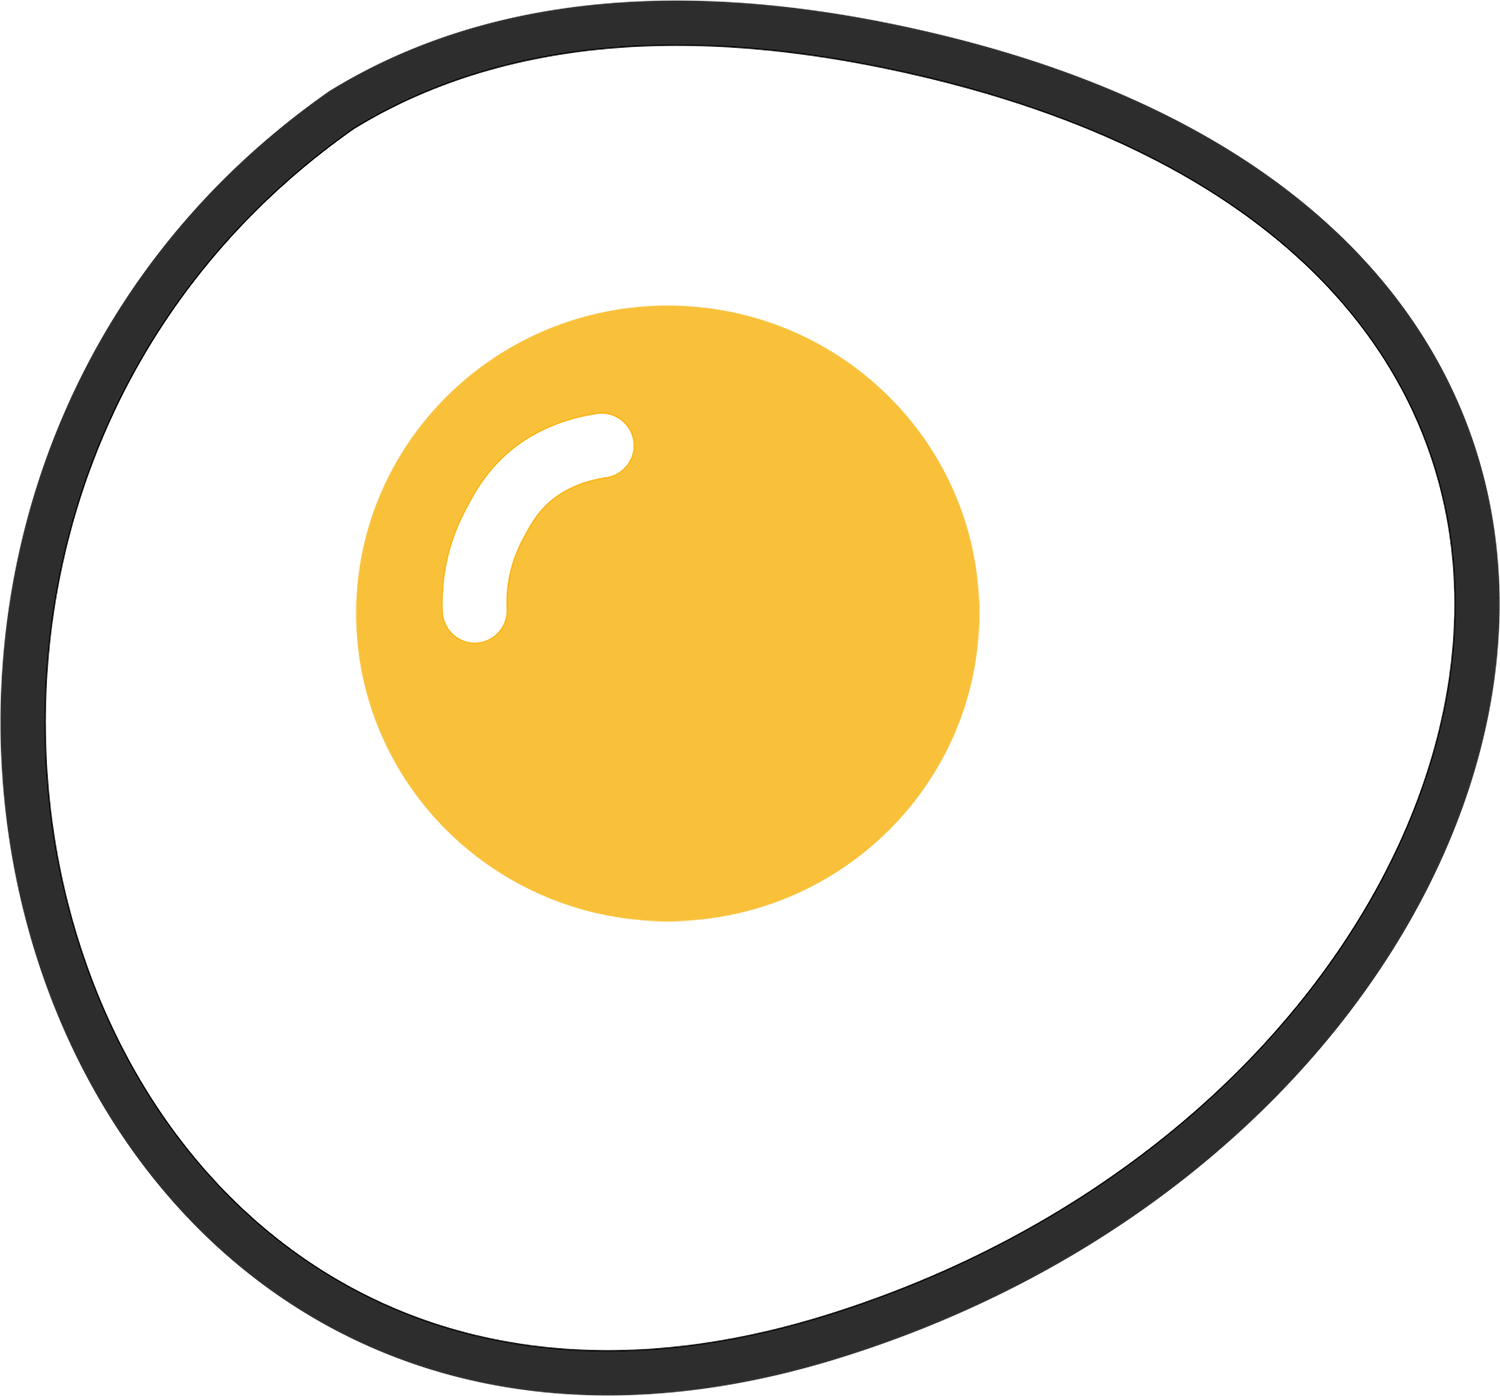 cracked open egg